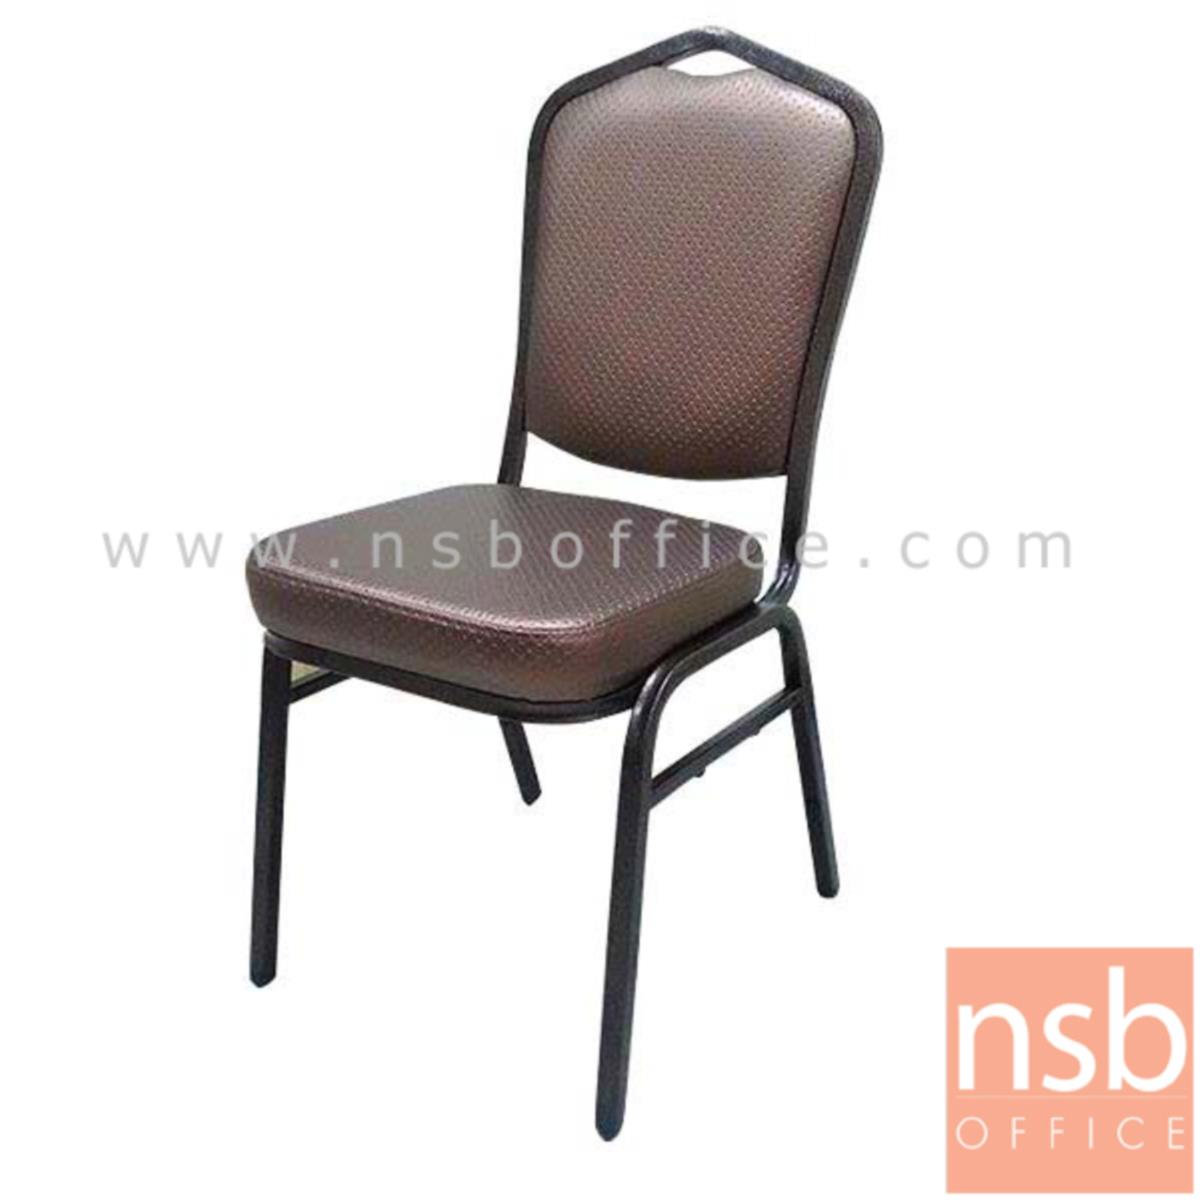 B05A138:เก้าอี้อเนกประสงค์จัดเลี้ยง  ขนาด 92H cm.  ขาเหล็กพ่นสี